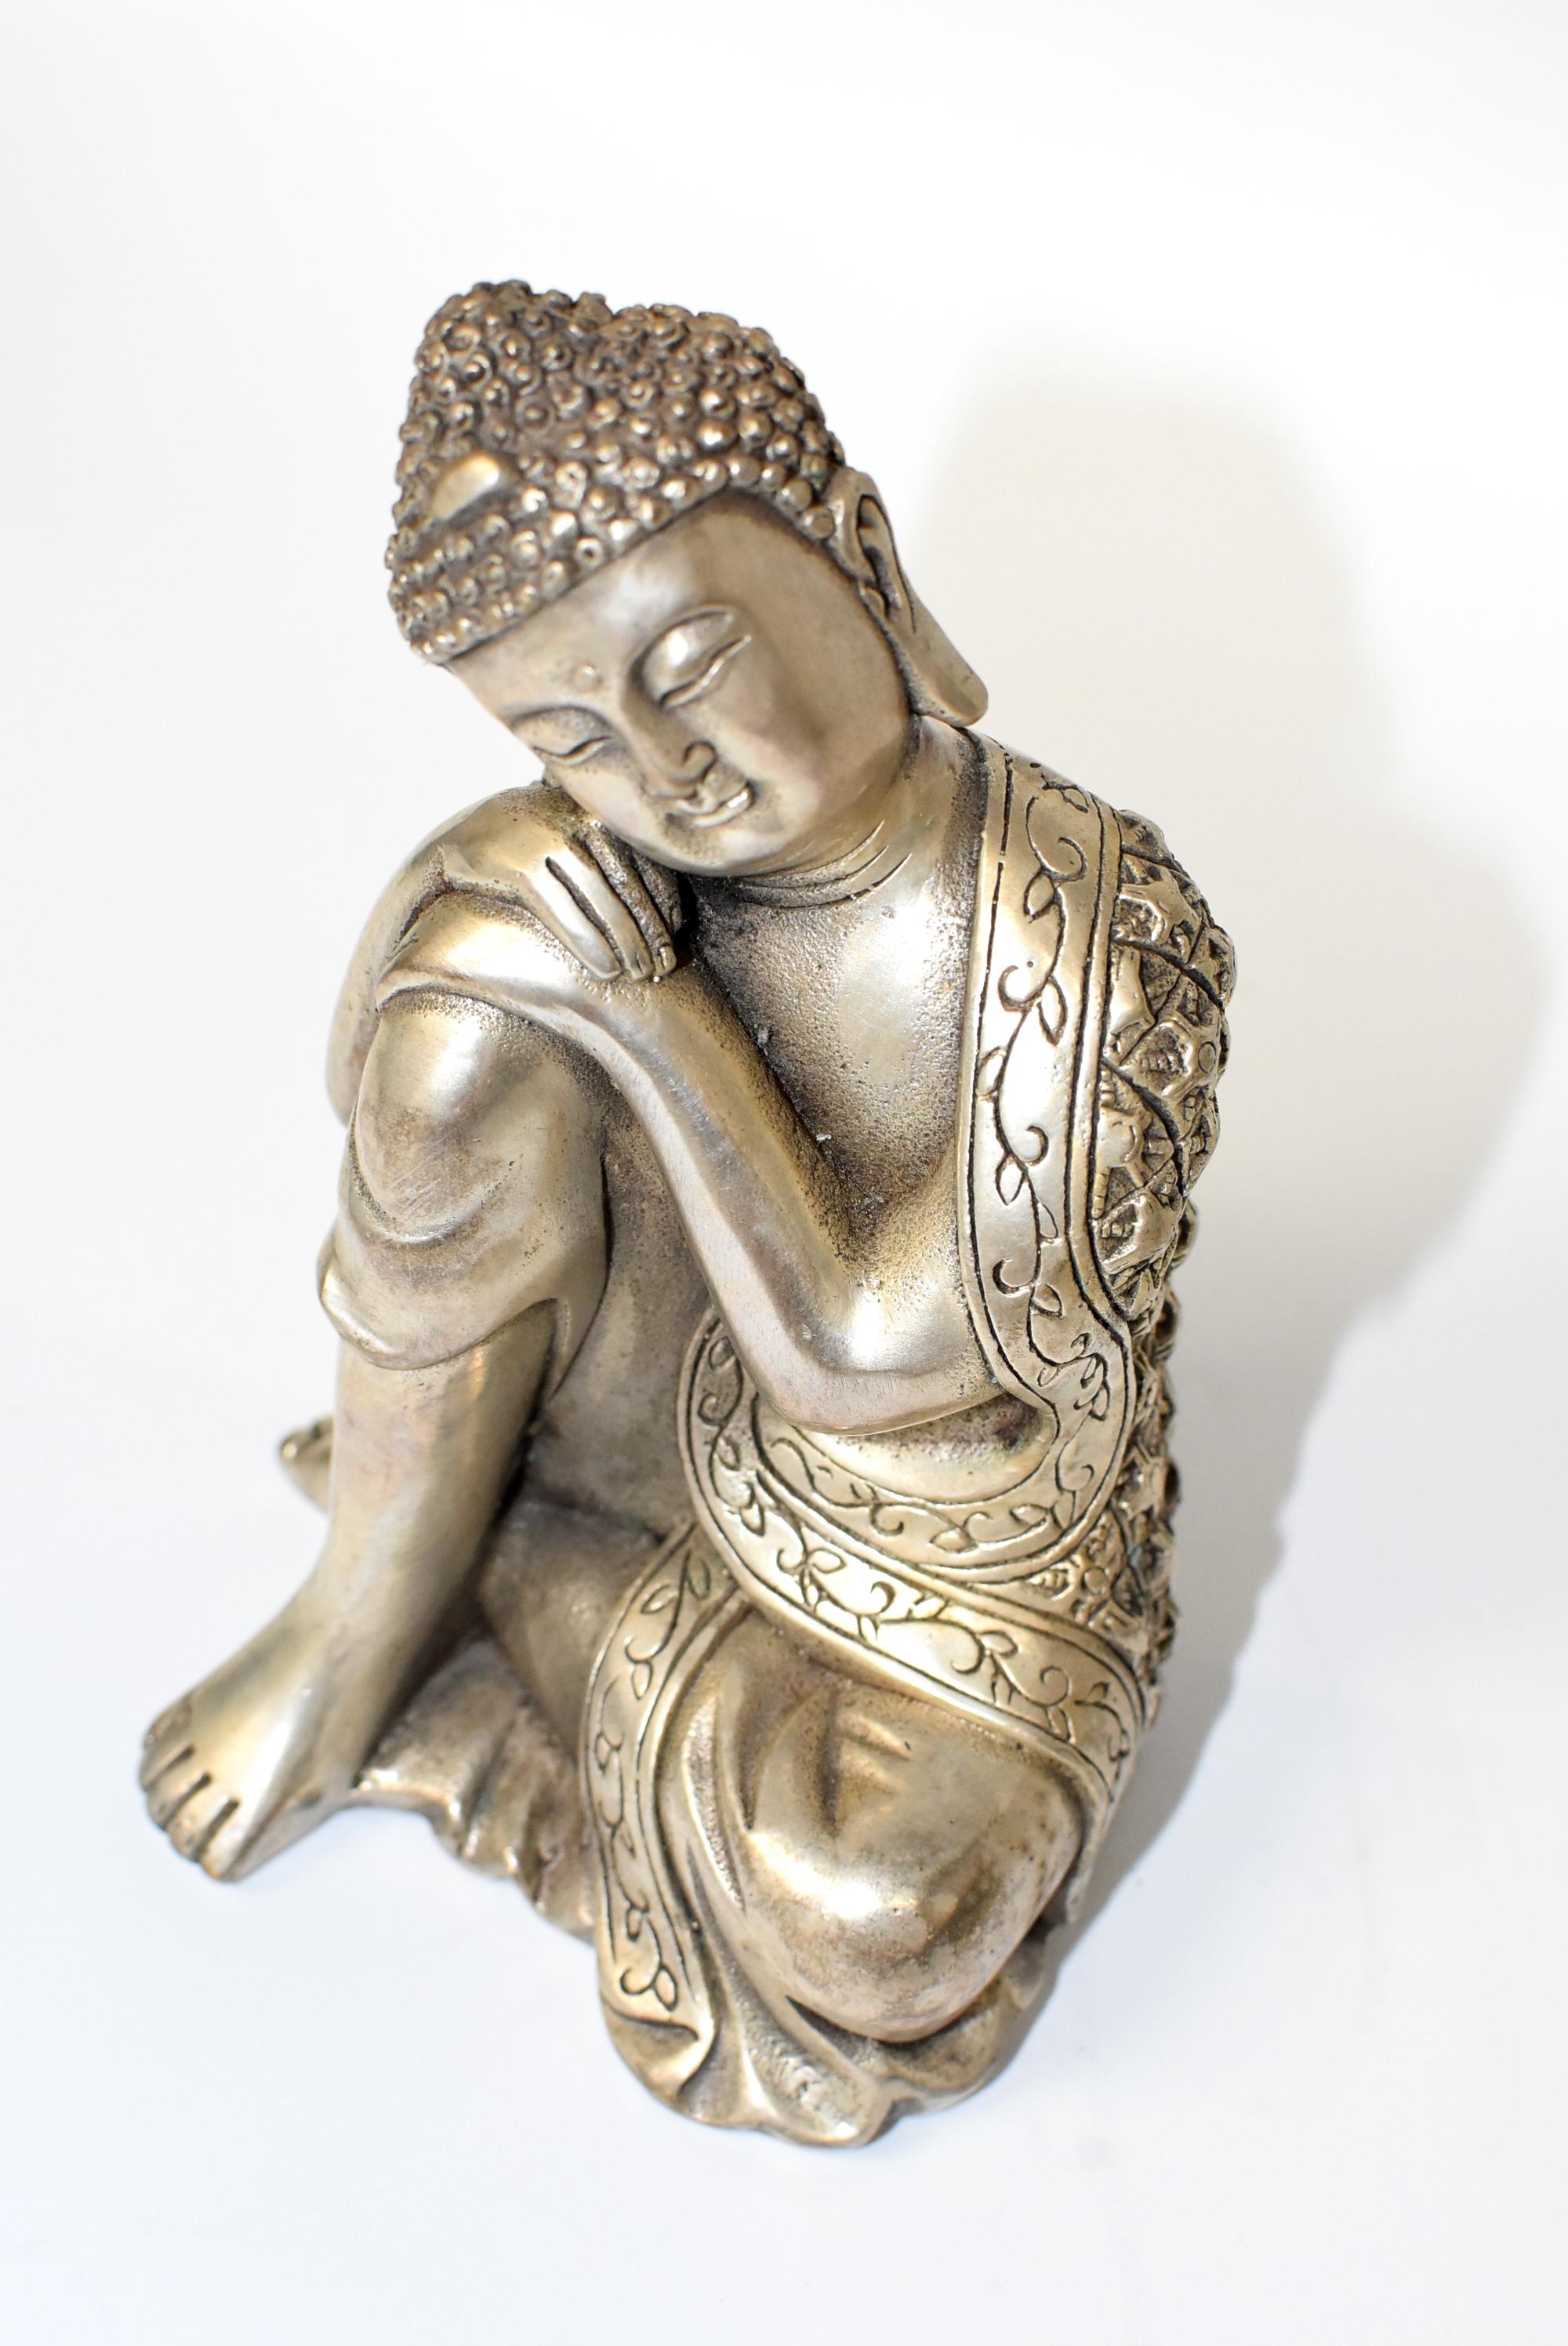 Chinese Silvered Brass Buddha Statue, a Thinking Buddha